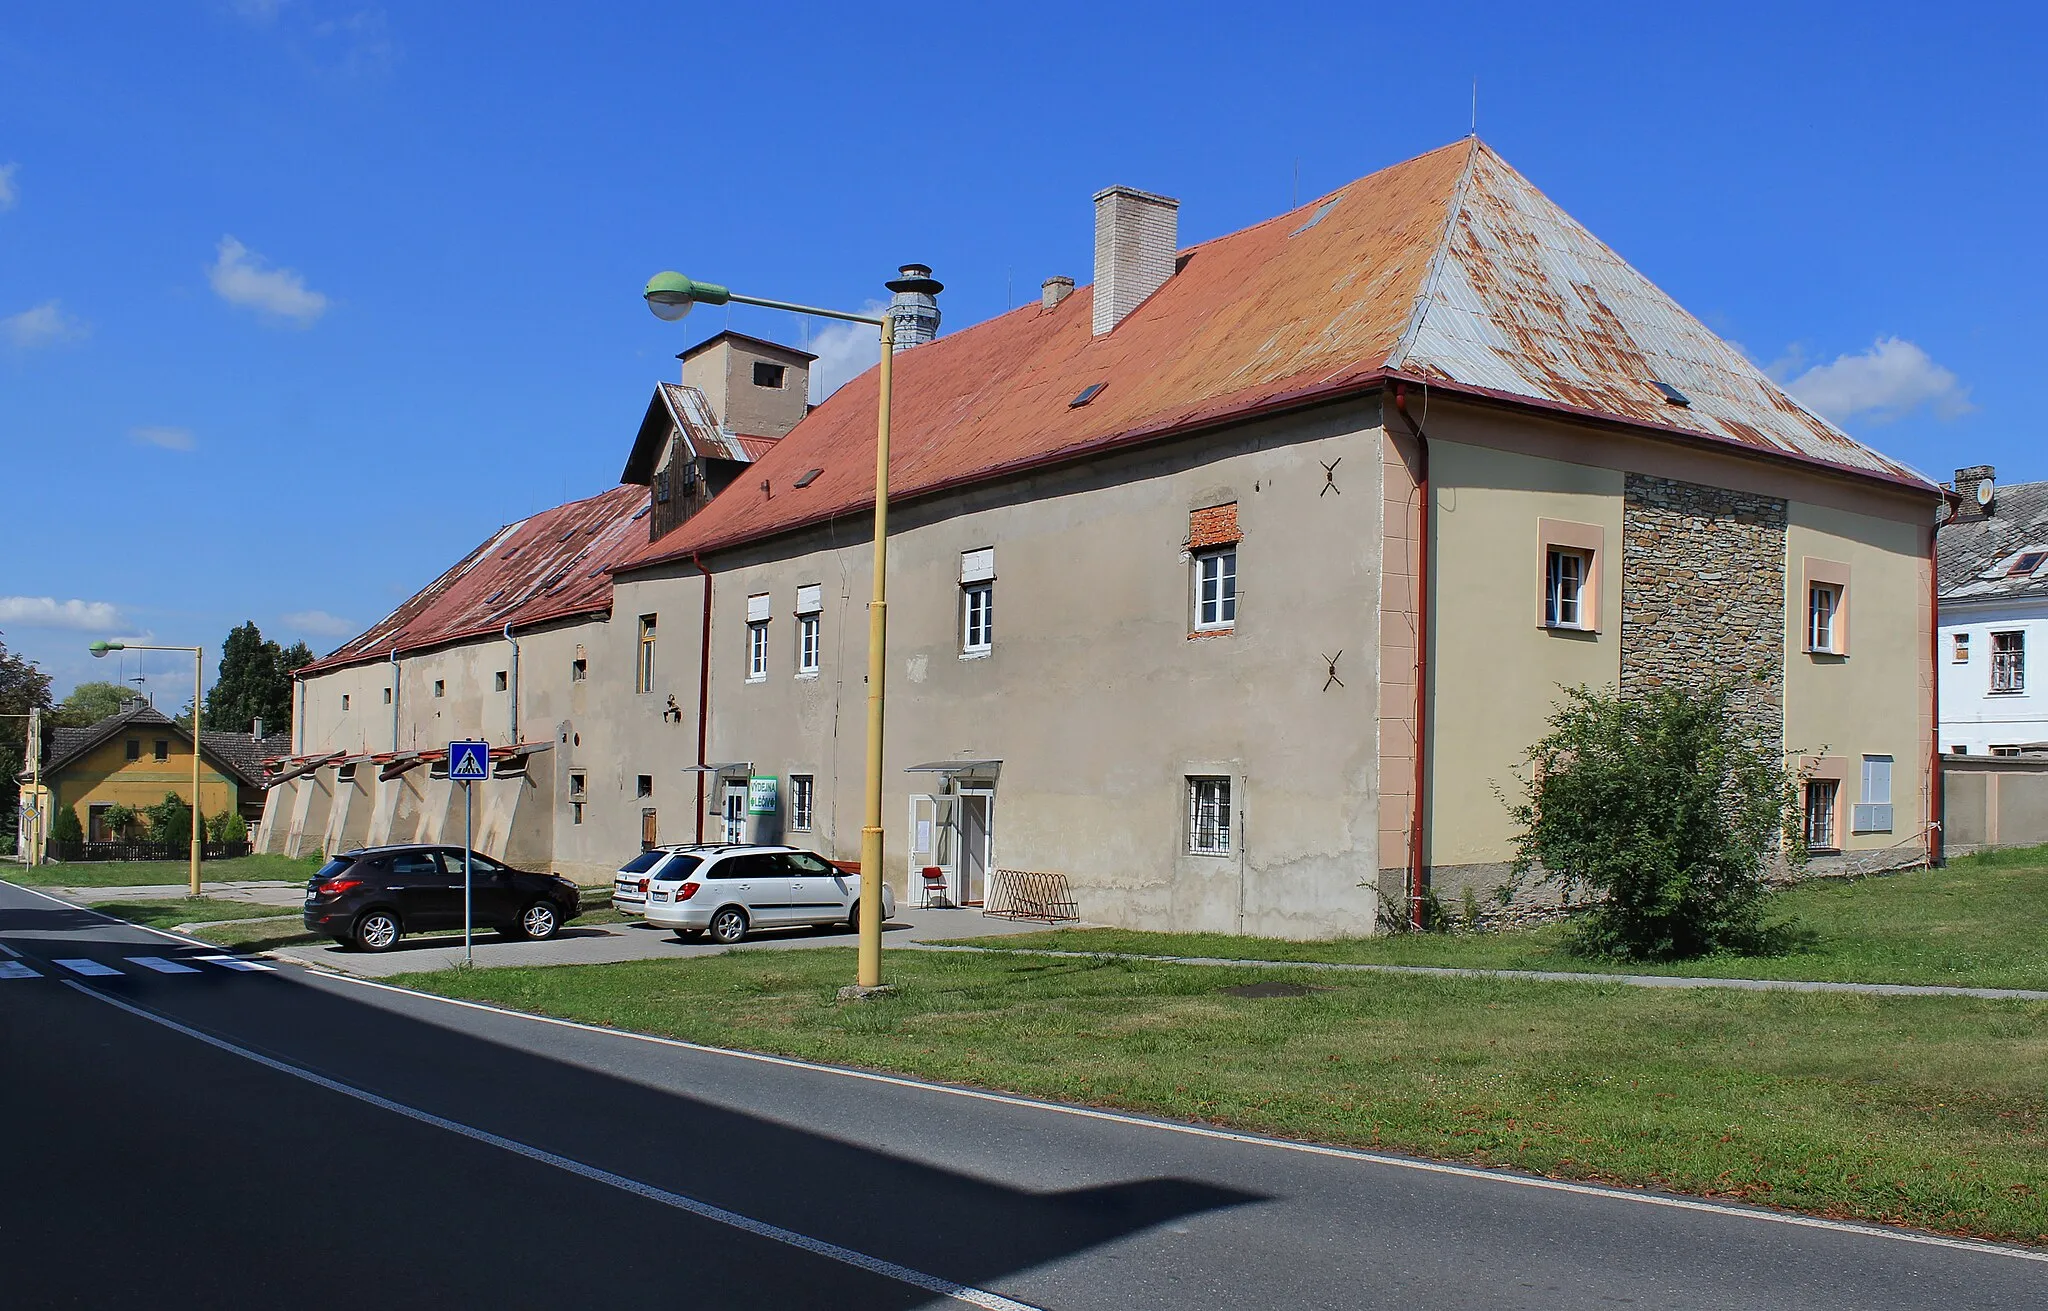 Photo showing: Old malt-house in Dymokury, Czech Republic.